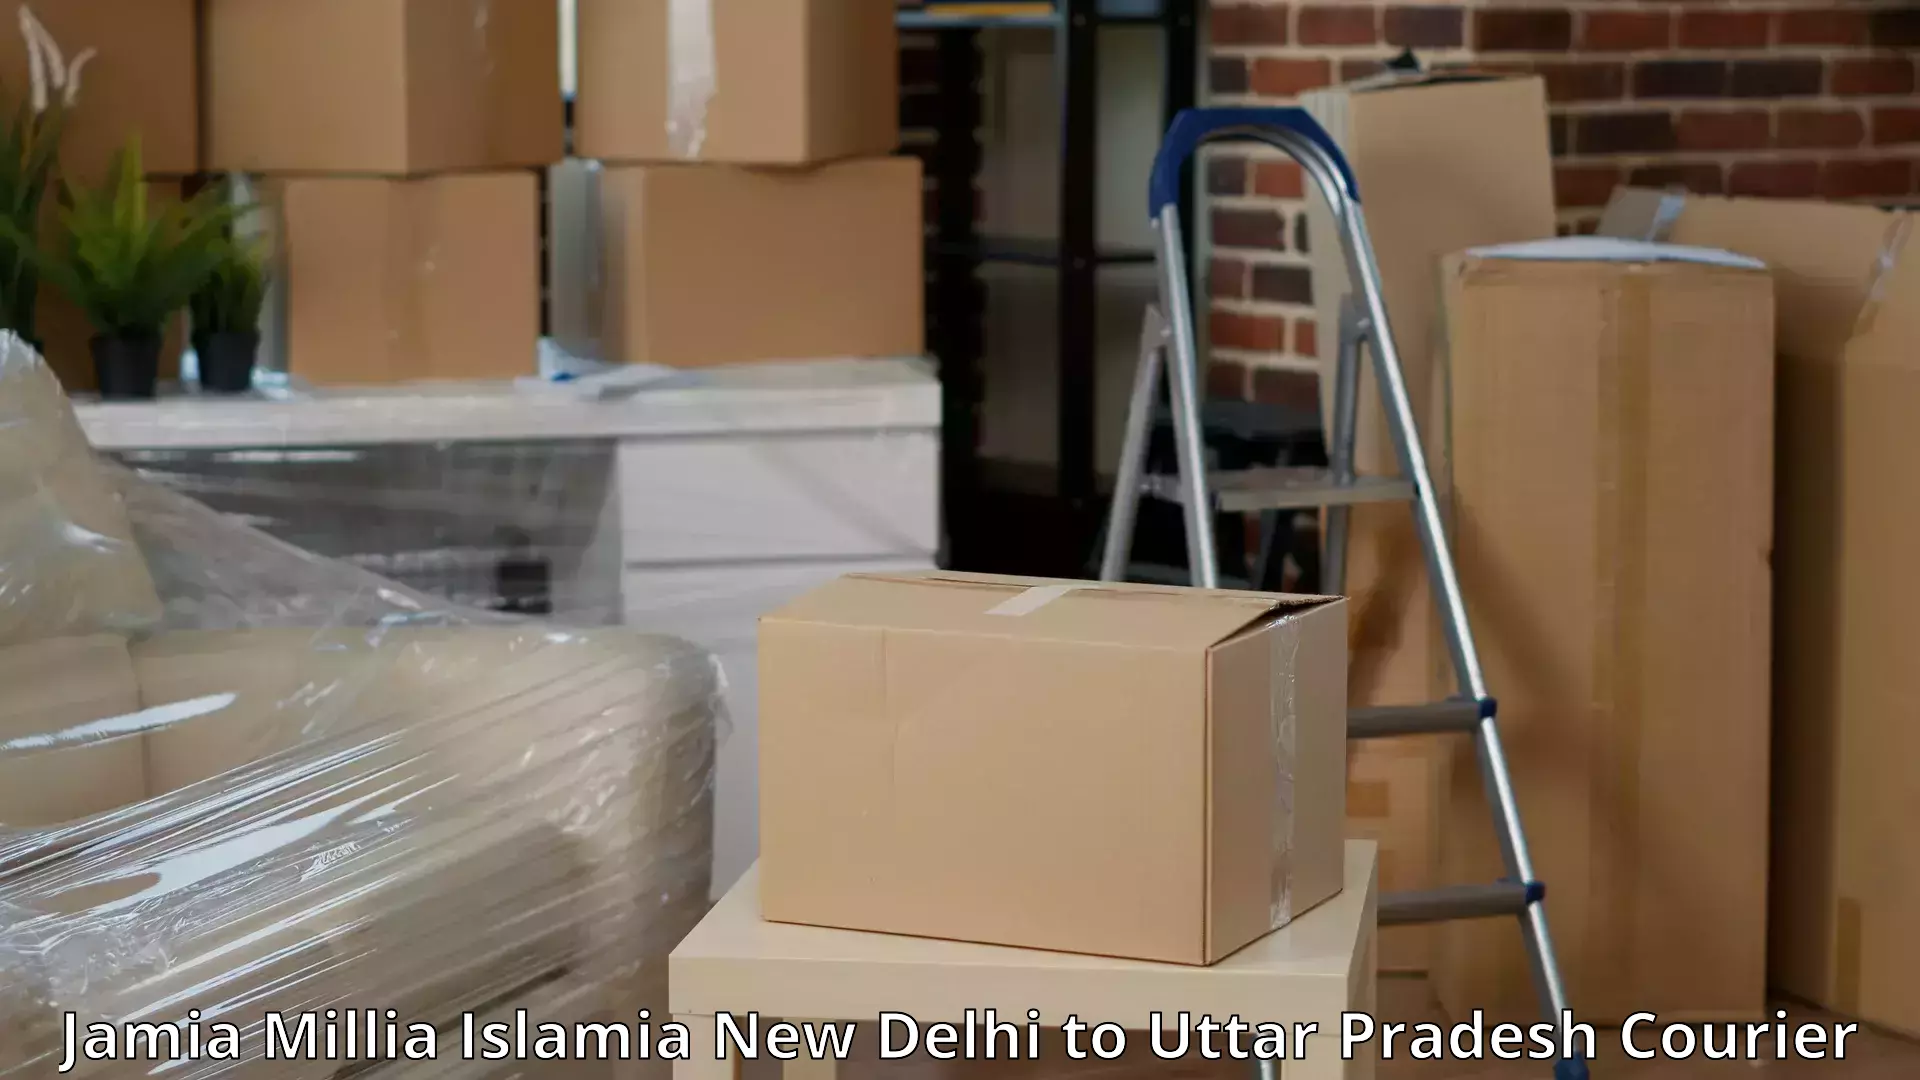 Comprehensive relocation services Jamia Millia Islamia New Delhi to Dadri